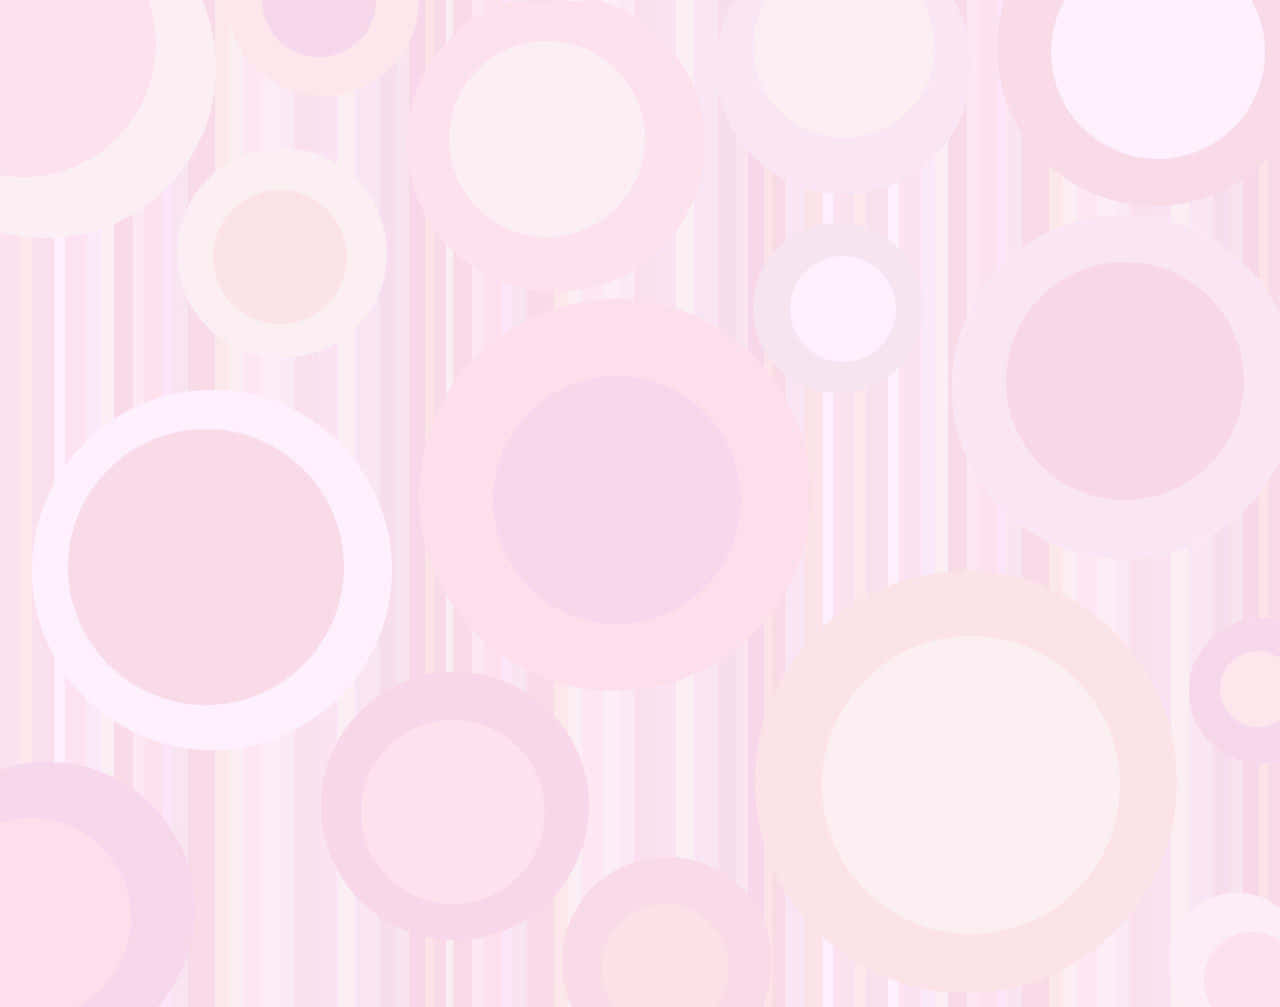 Pinkkreise Hintergrundbild Mit Weißen Kreisen